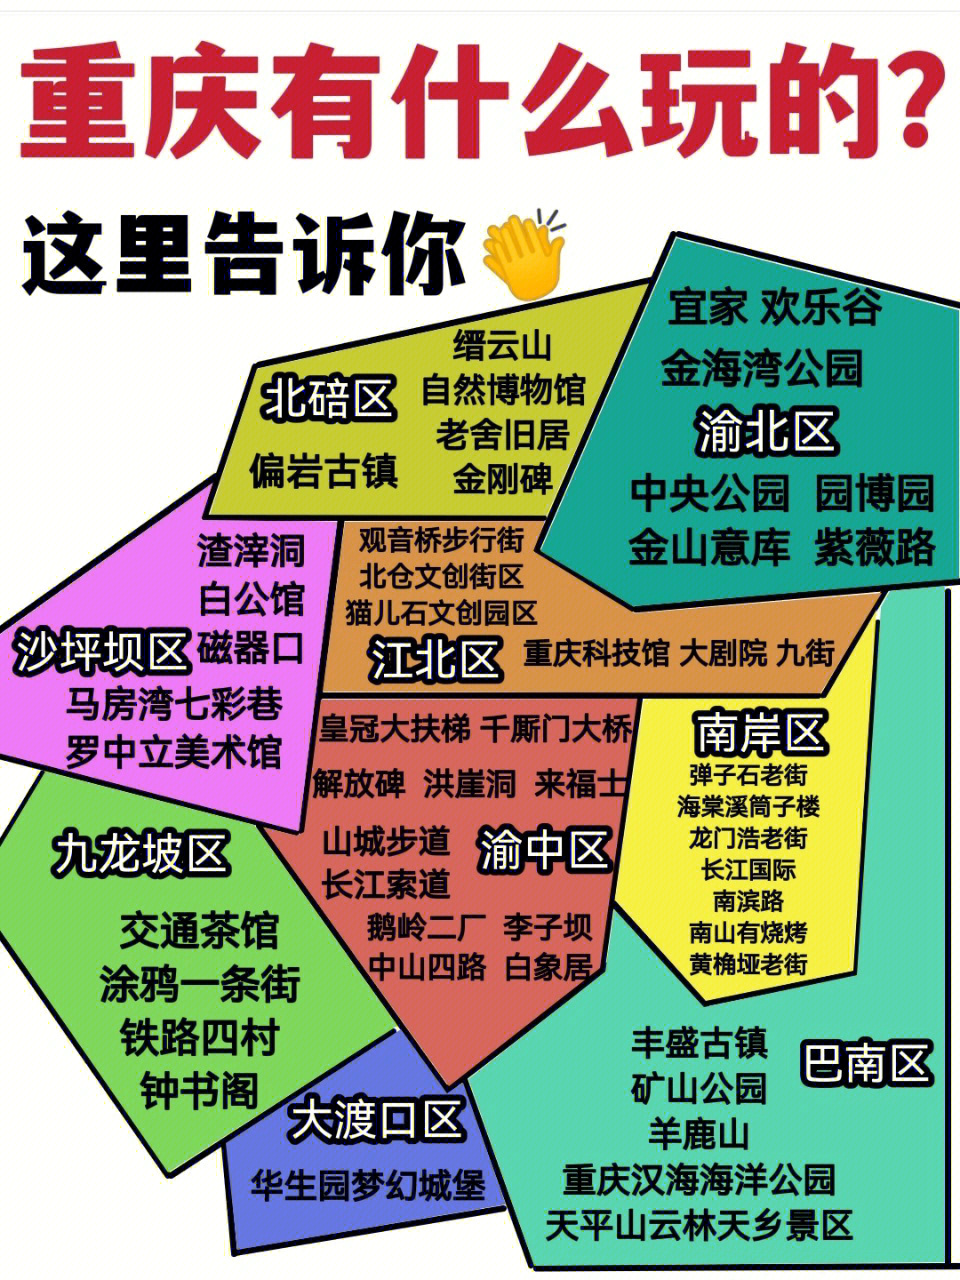 重庆主城九区分布图图片